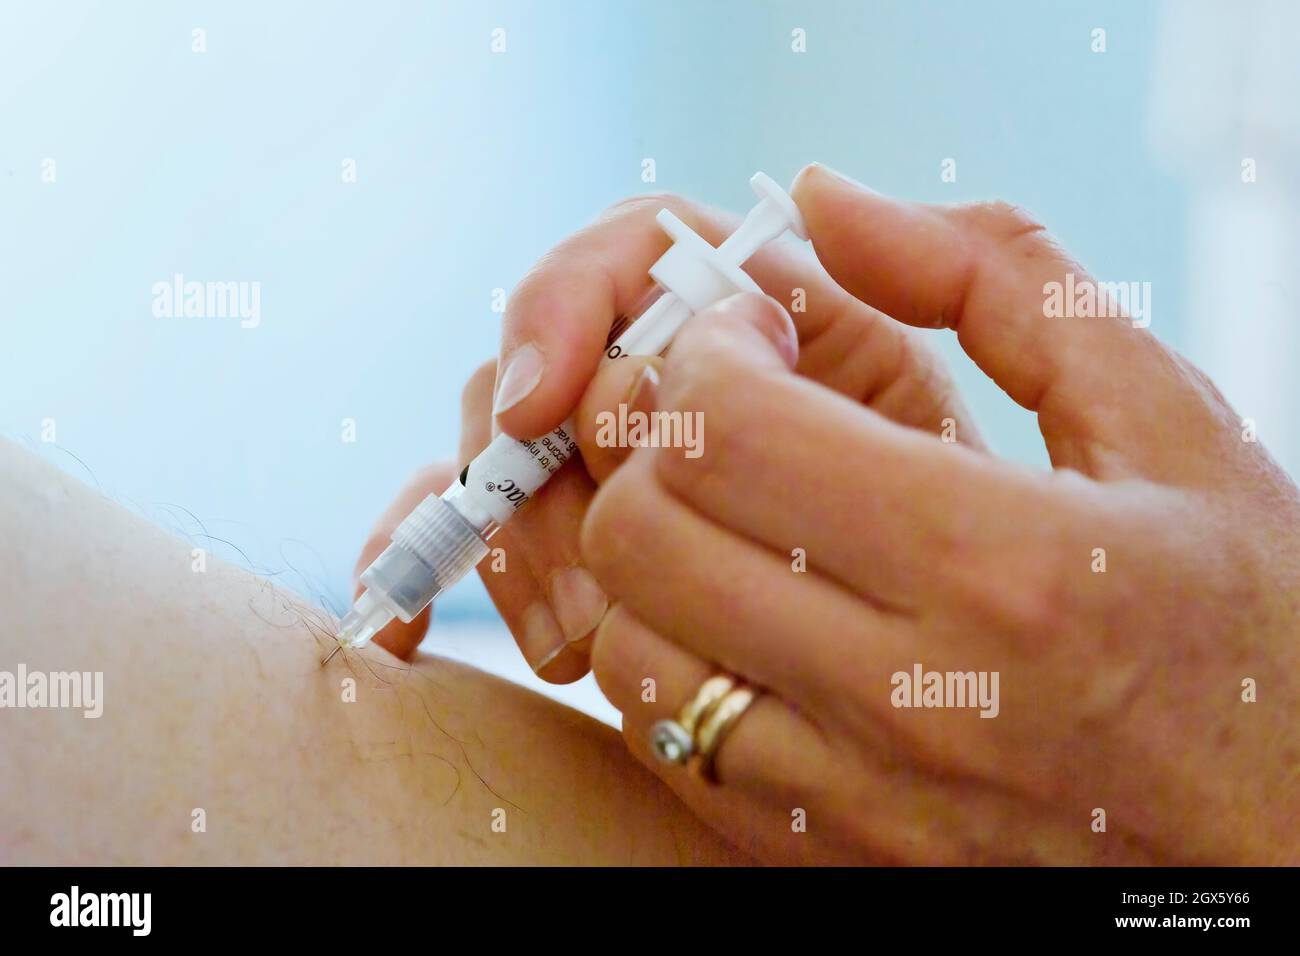 Paciente que recibe una vacuna contra la influenza, administrada por una aguja en la parte superior del brazo. Foto de stock